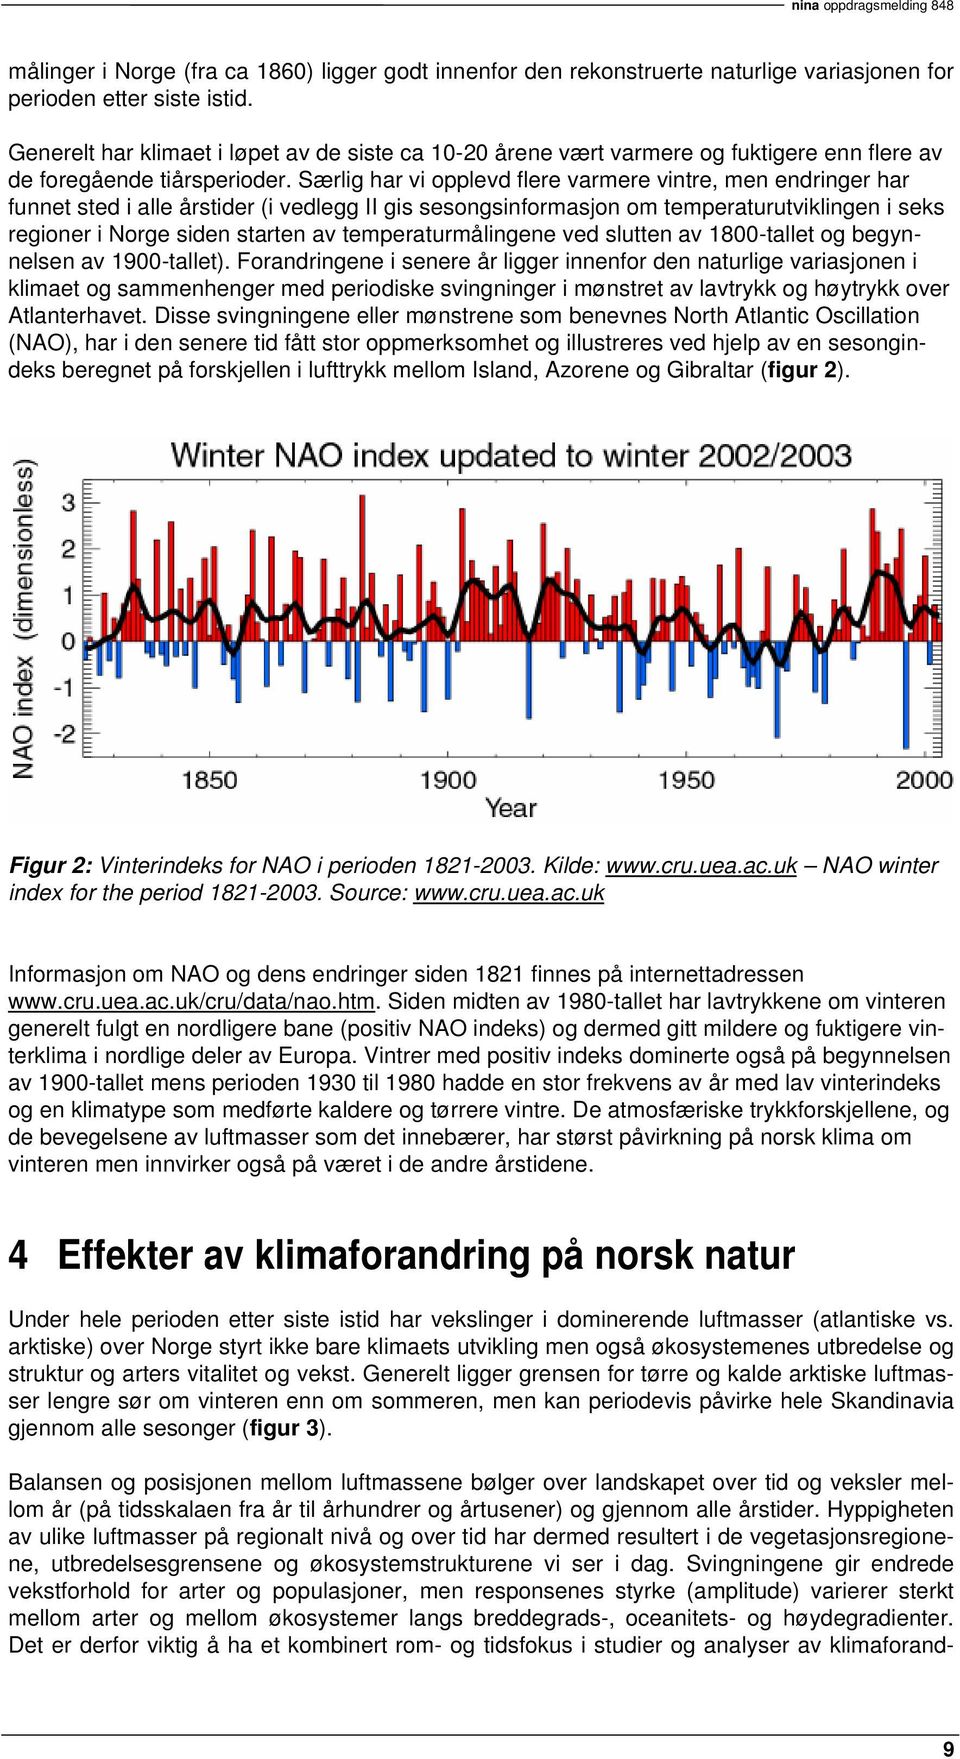 Særlig har vi opplevd flere varmere vintre, men endringer har funnet sted i alle årstider (i vedlegg II gis sesongsinformasjon om temperaturutviklingen i seks regioner i Norge siden starten av